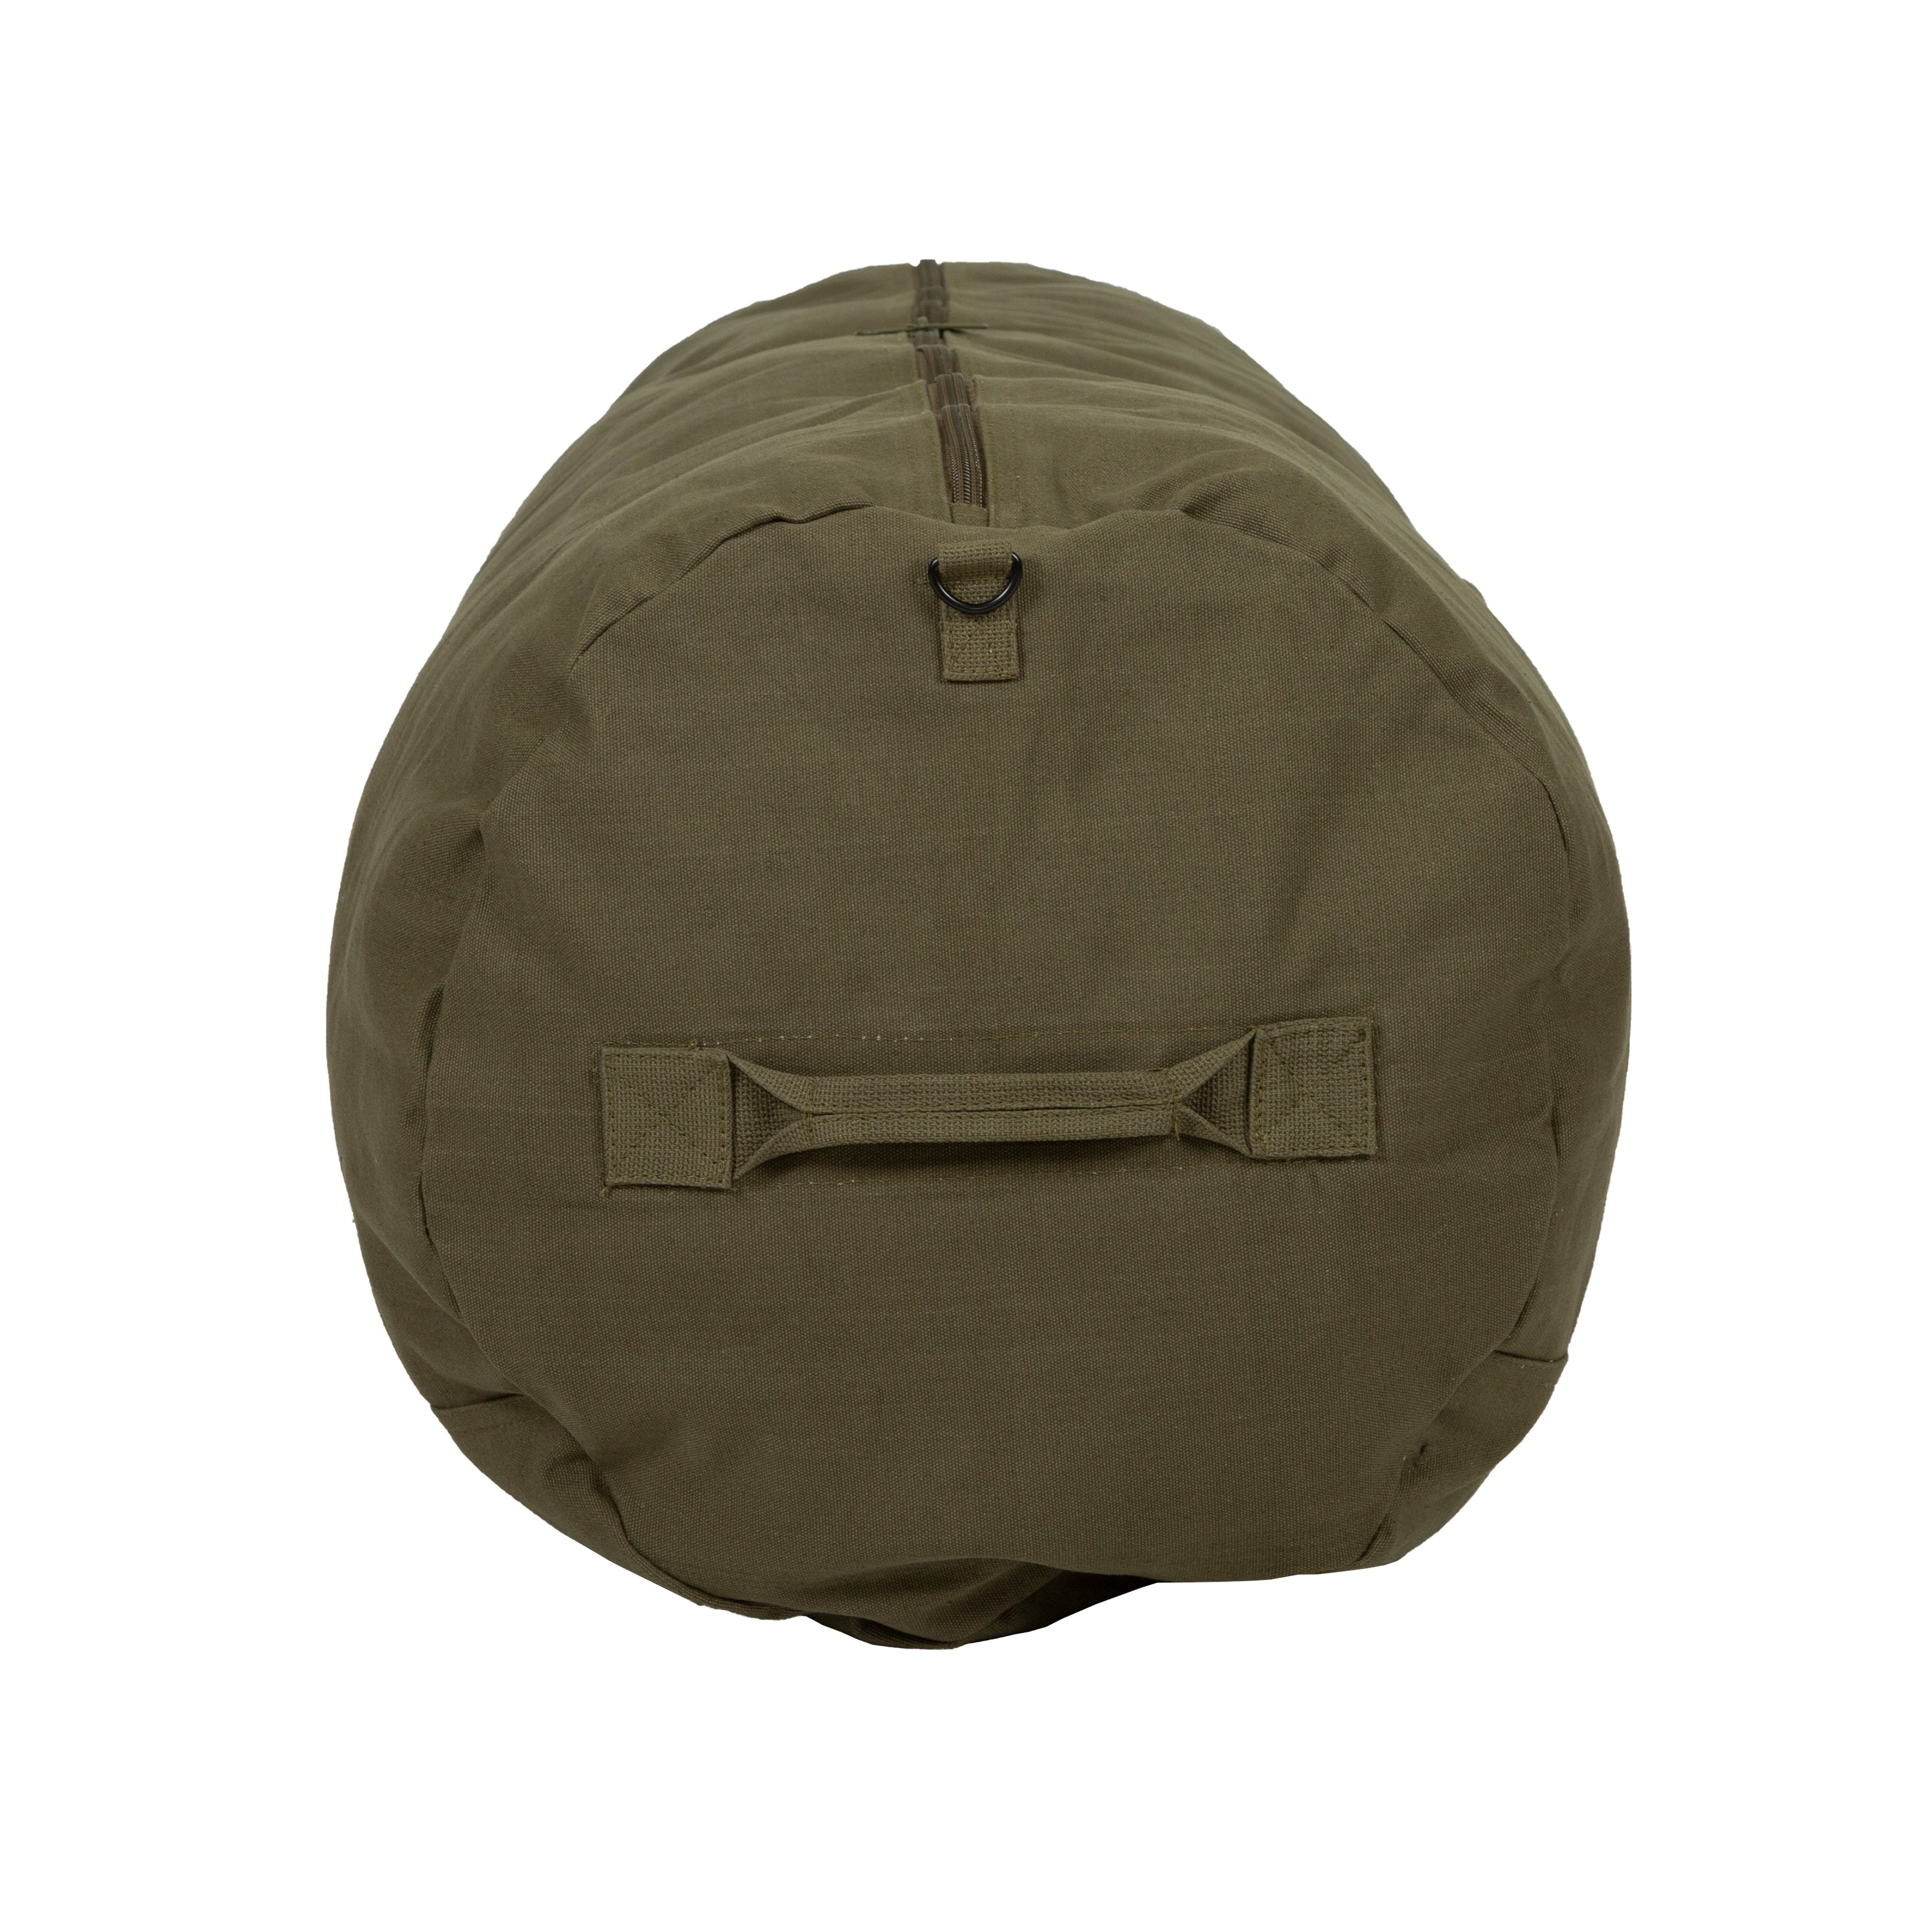 Duffel Bag With Zipper - O.D. - 50 In X 18 In X 18 In